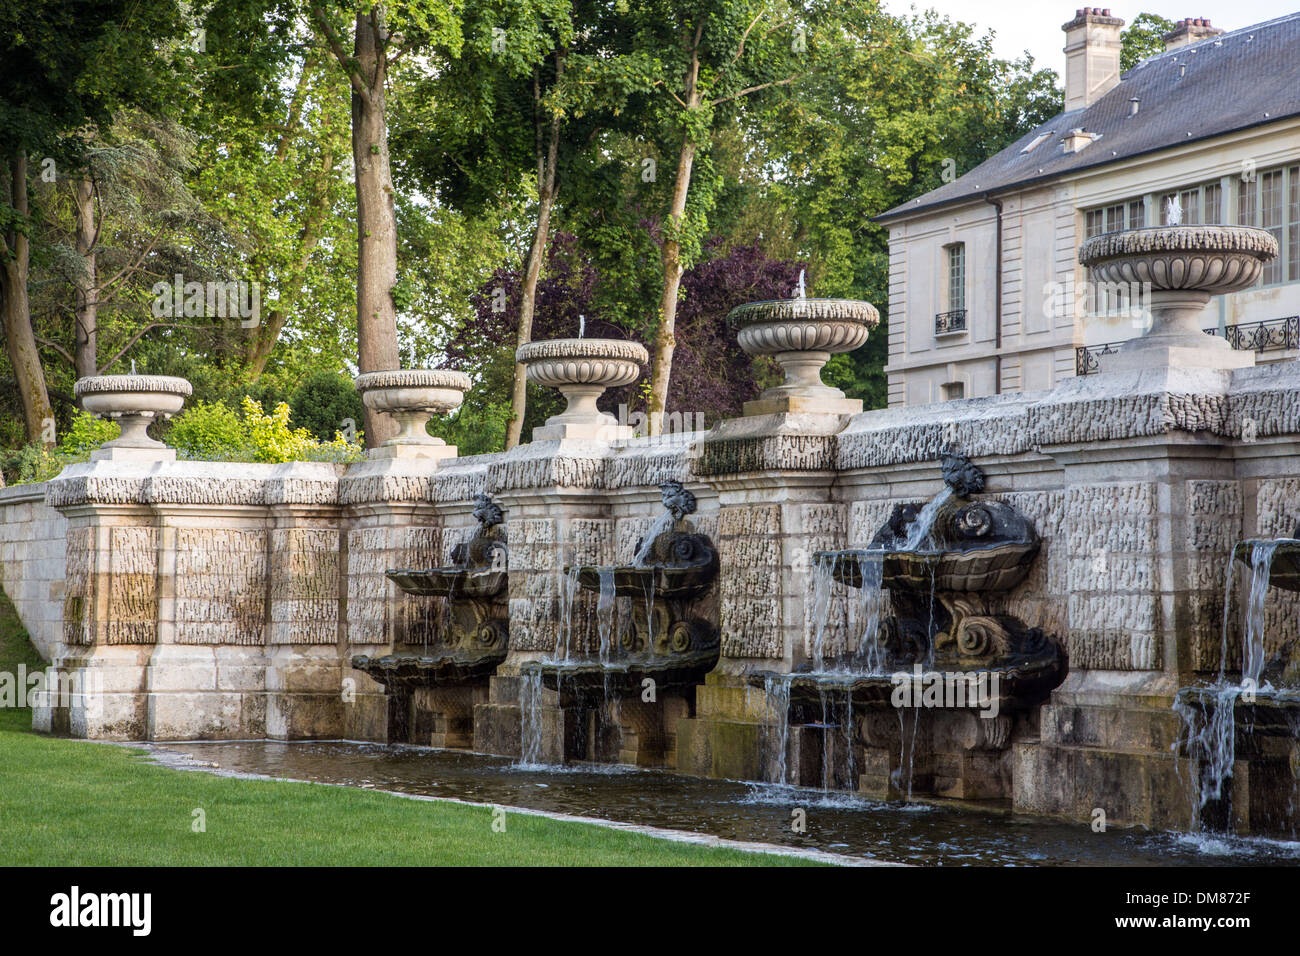 Cascate di Beauvais, grande fontana progettata da Andre le Notre (1613-1700) nel 17esimo secolo, giardino inglese progettato nel 1819 durante la restaurazione francese, STATION WAGON DEL Chateau de Chantilly, OISE (60), Francia Foto Stock